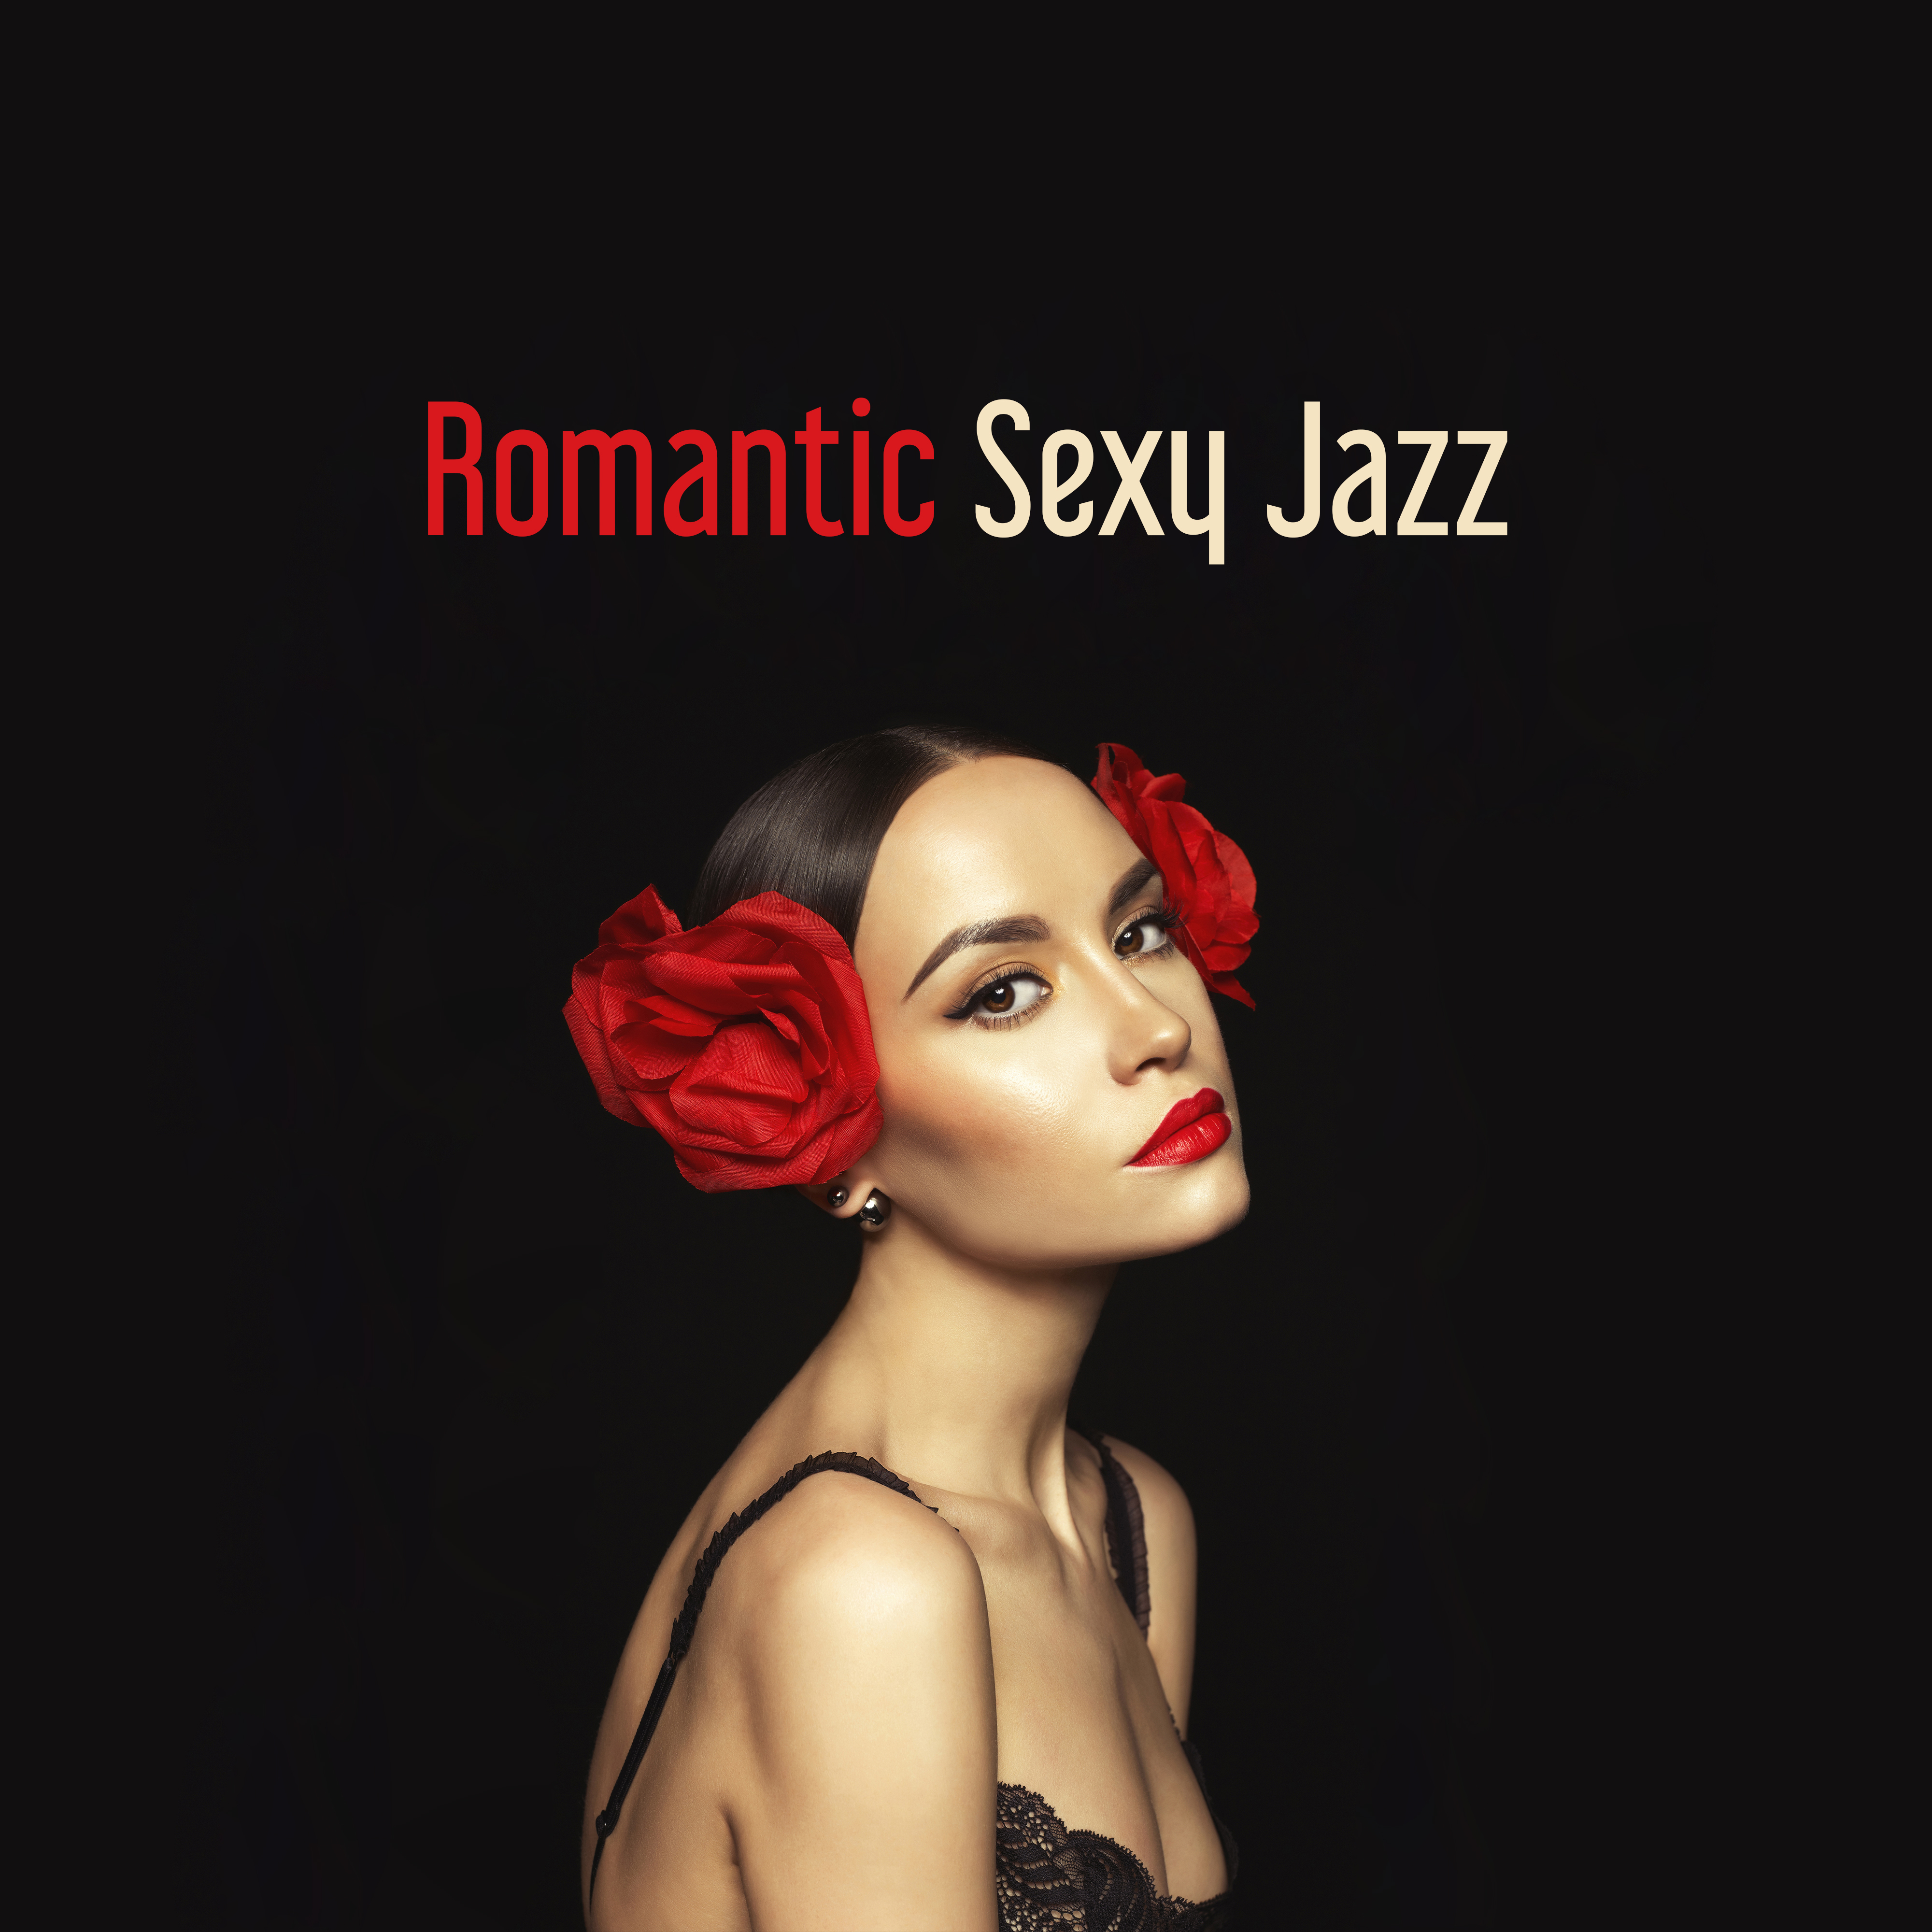 Romantic **** Jazz